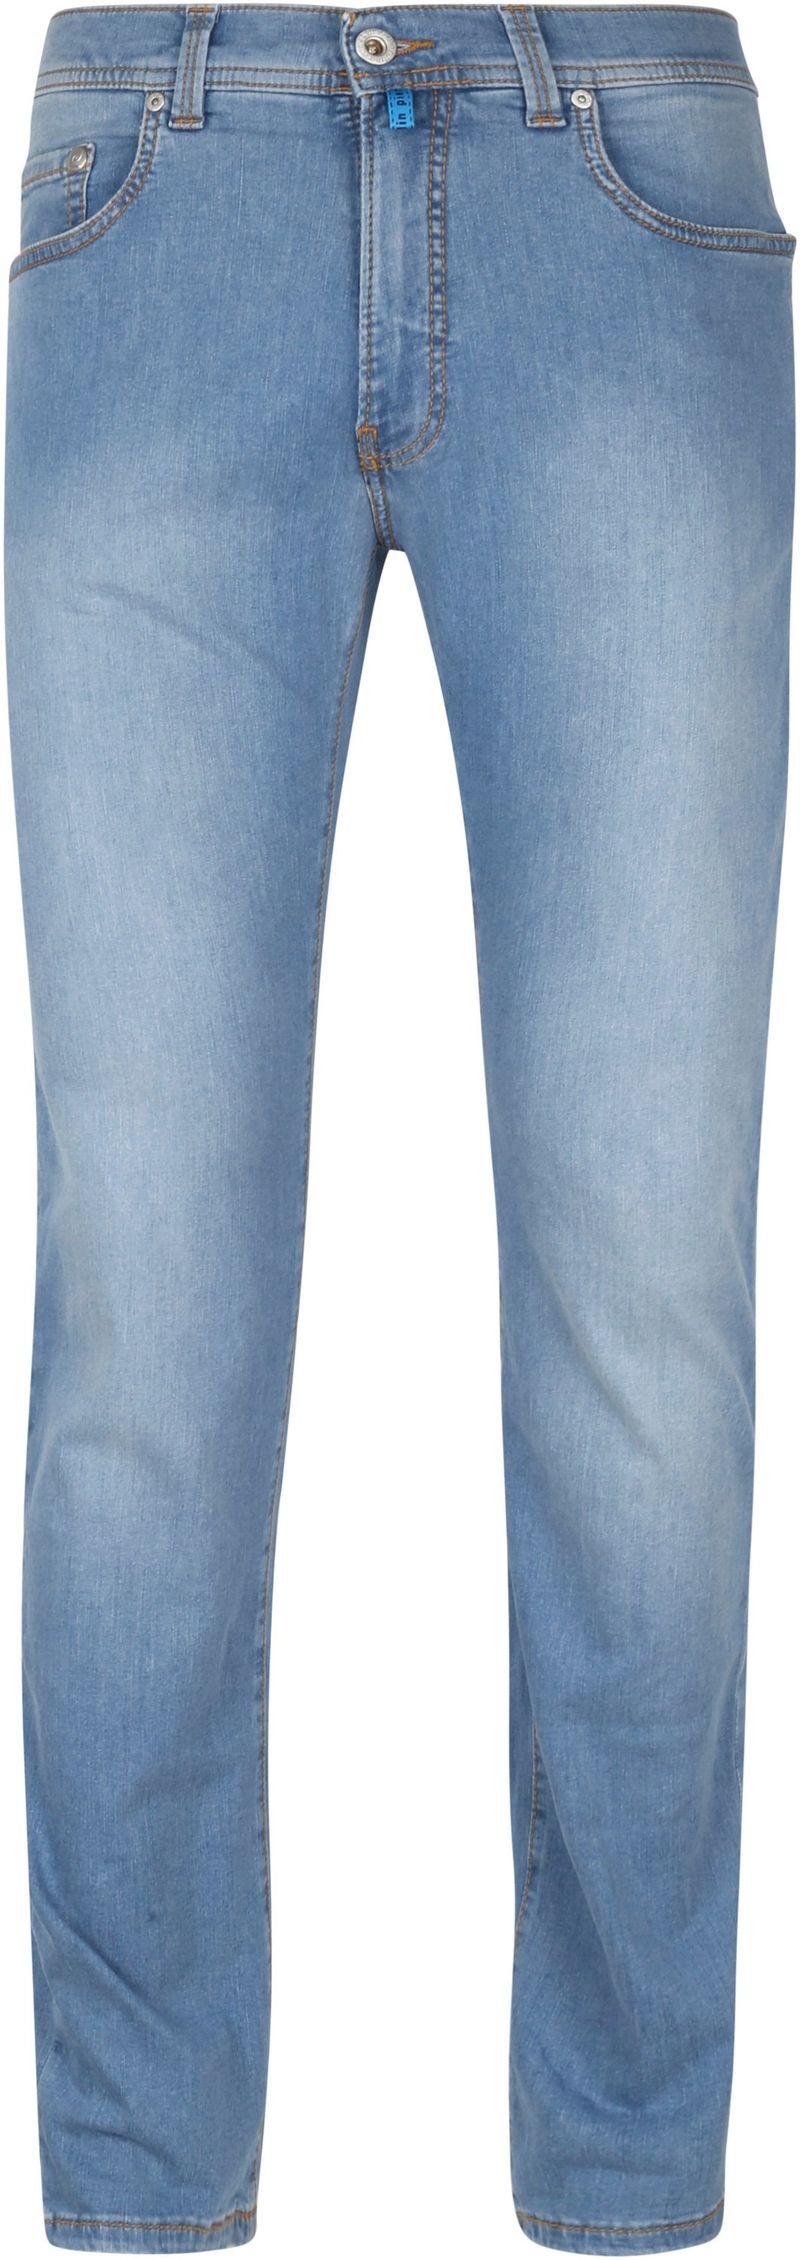 Pierre Cardin Jeans Lyon Tapered Future Flex Hellblau - Größe W 31 - L 34 günstig online kaufen